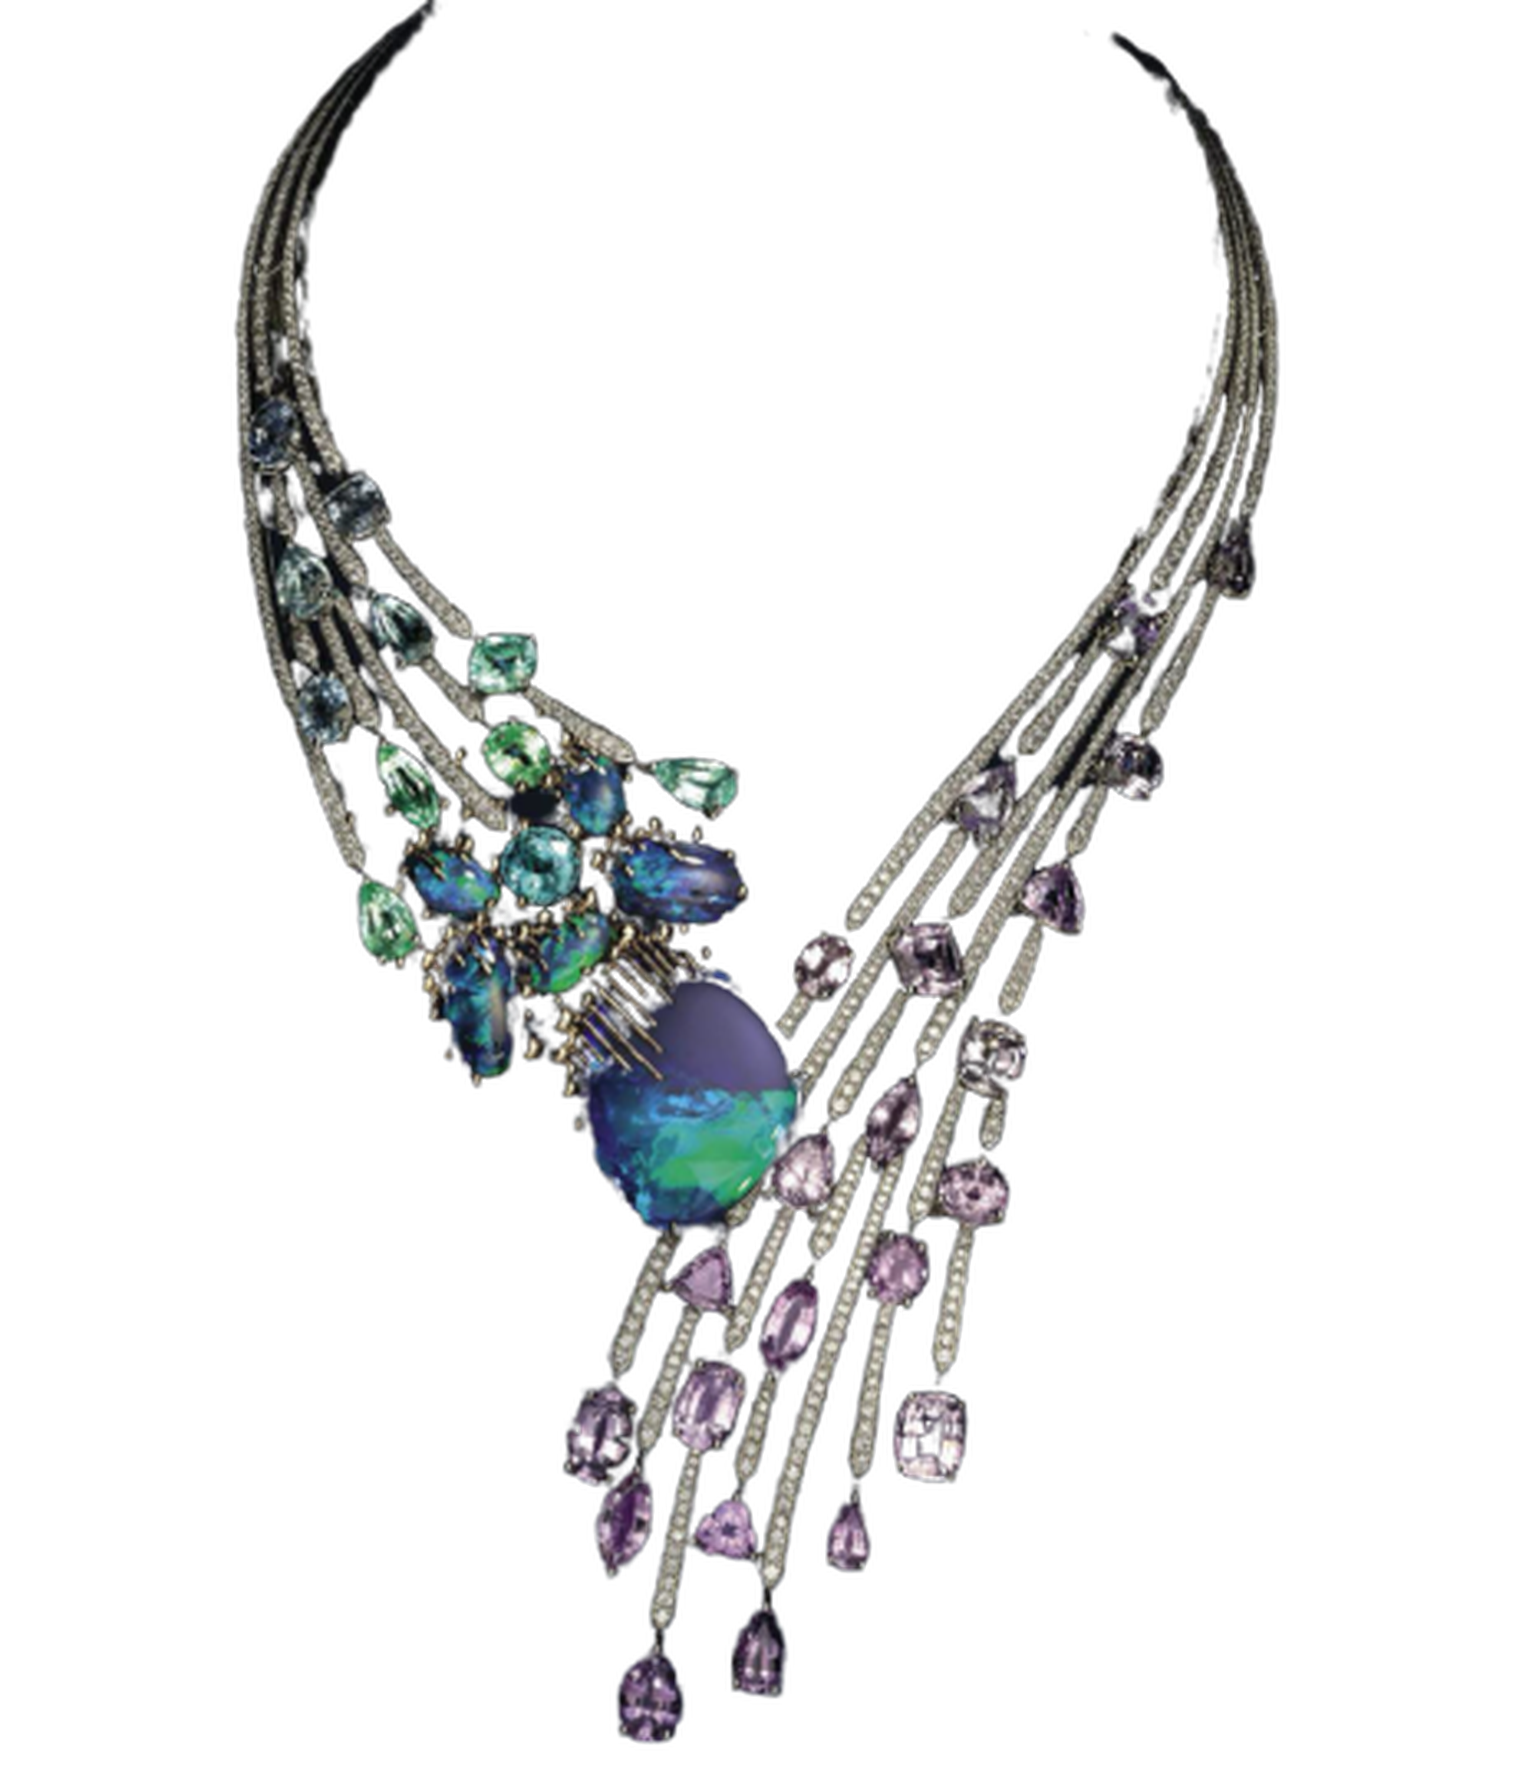 Les Ciels de Chaumet Passages high jewellery necklace